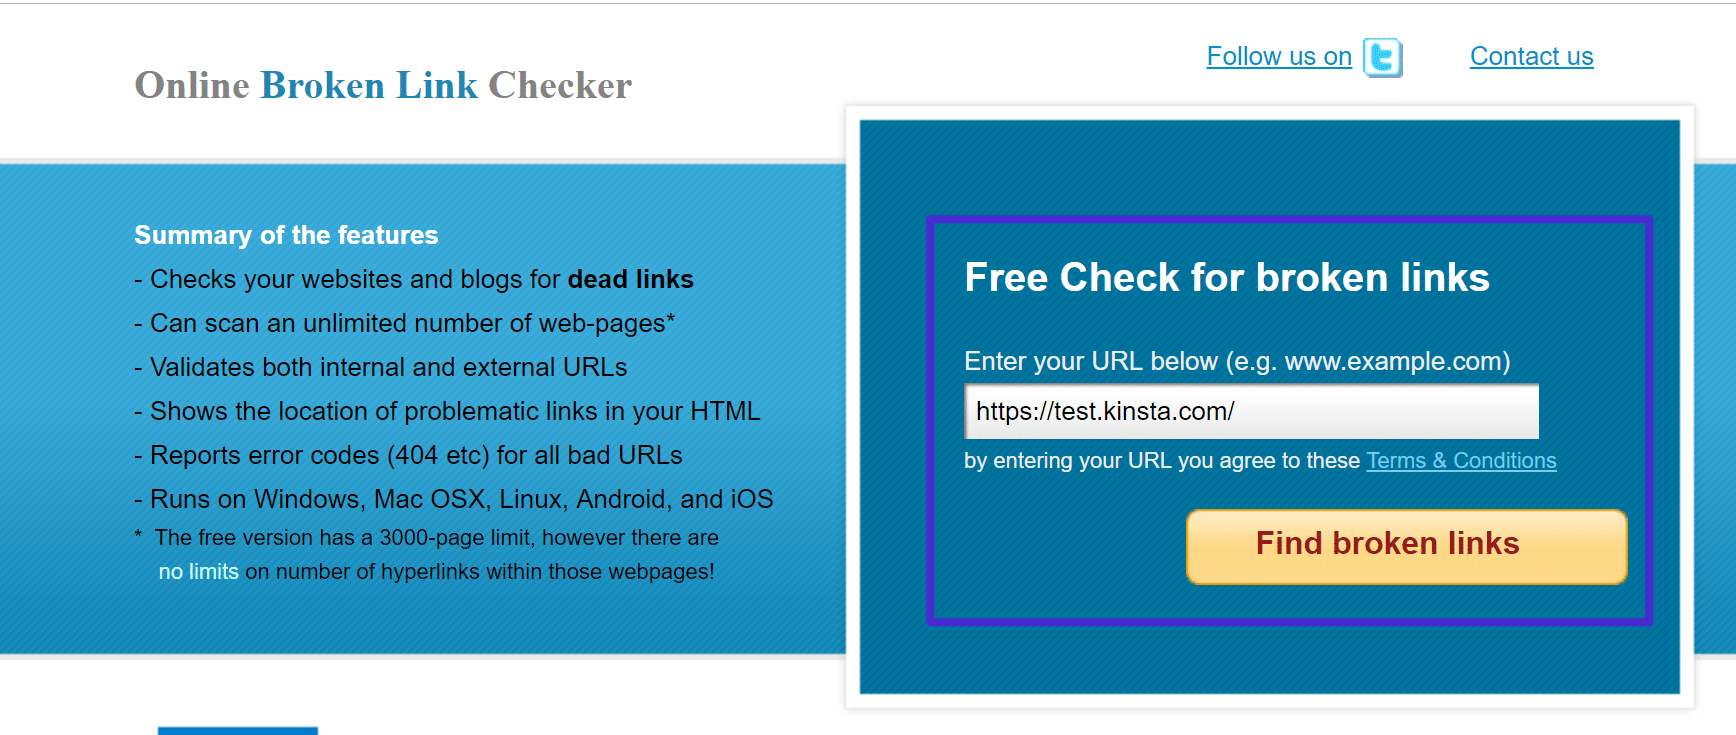 Agregue el URL de su sitio a BrokenLinkChecker.com